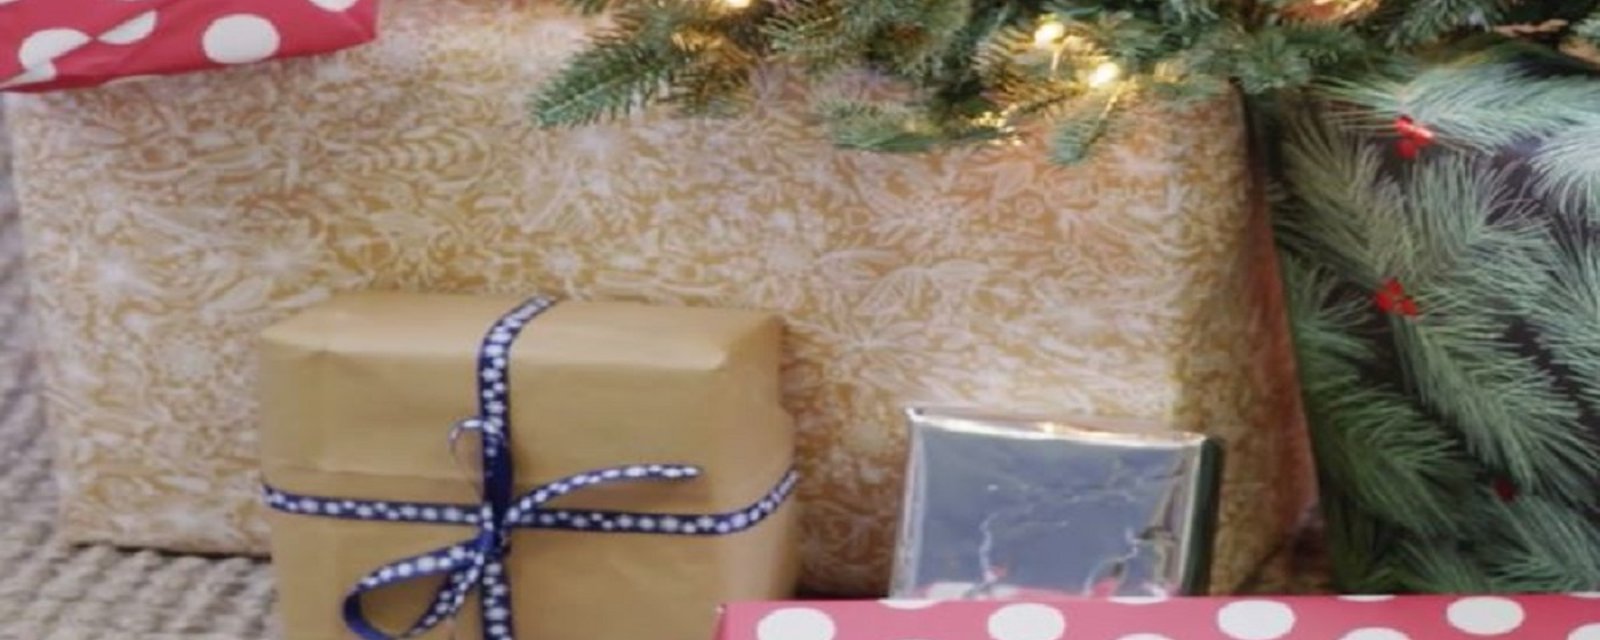 7 matériaux que vous pouvez récupérer pour emballer vos cadeaux de façon plus écologique